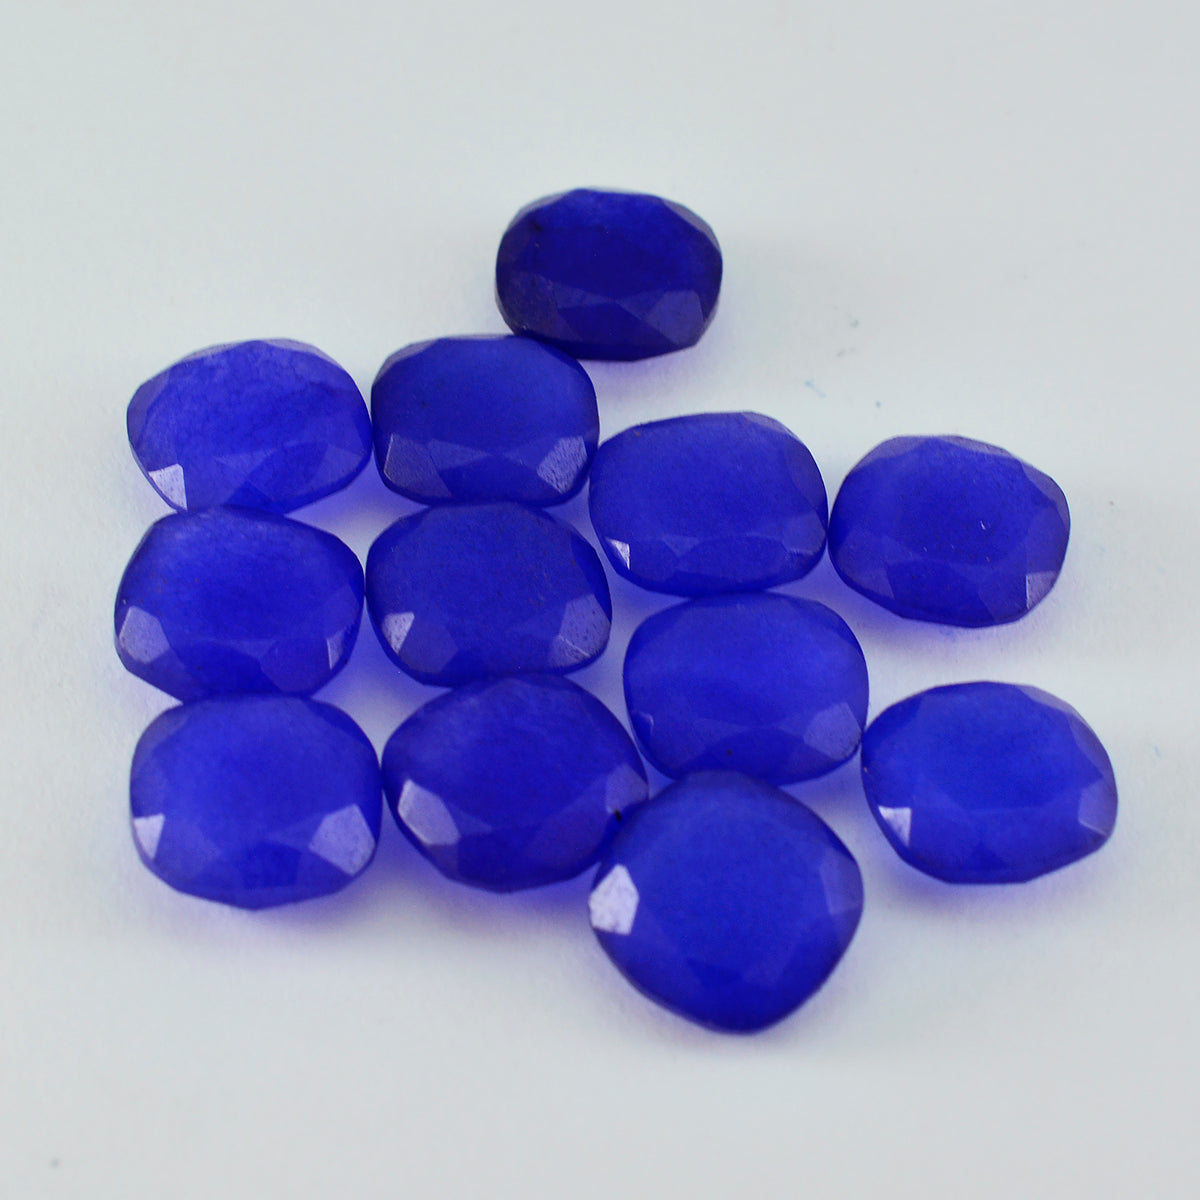 riyogems 1pc ナチュラル ブルー ジャスパー ファセット 7x7 mm クッション形状 AA 品質ルース宝石